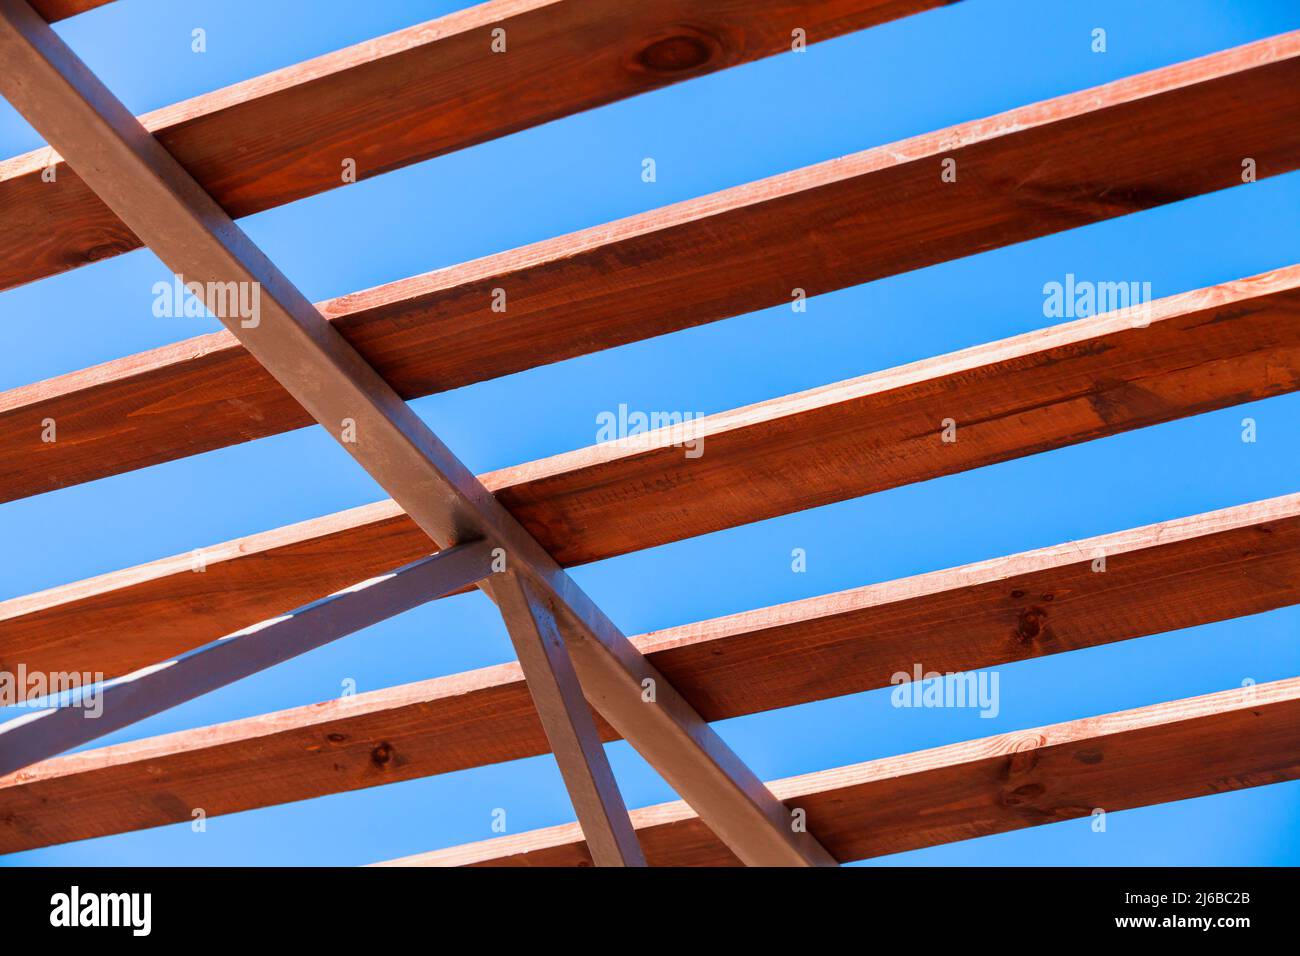 Hölzerne Dachbalken lagen auf einem Stahlrahmen, moderne Baukonstruktion steht an einem sonnigen Sommertag unter tiefblauem Himmel Stockfoto